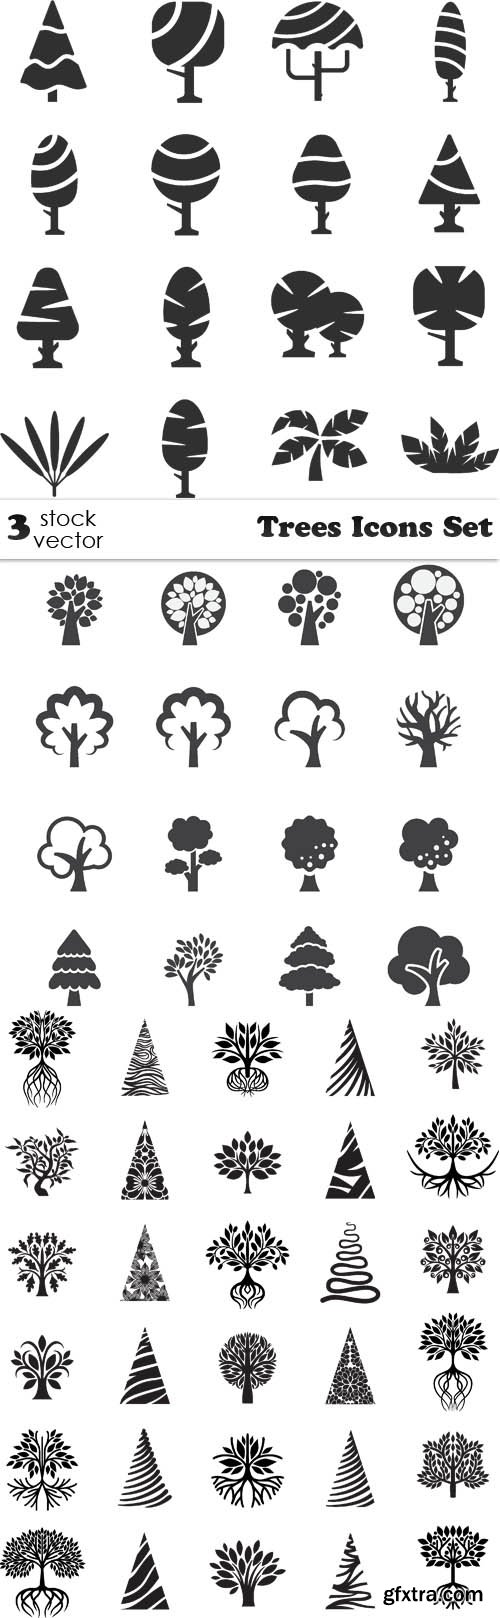 Vectors - Trees Icons Set